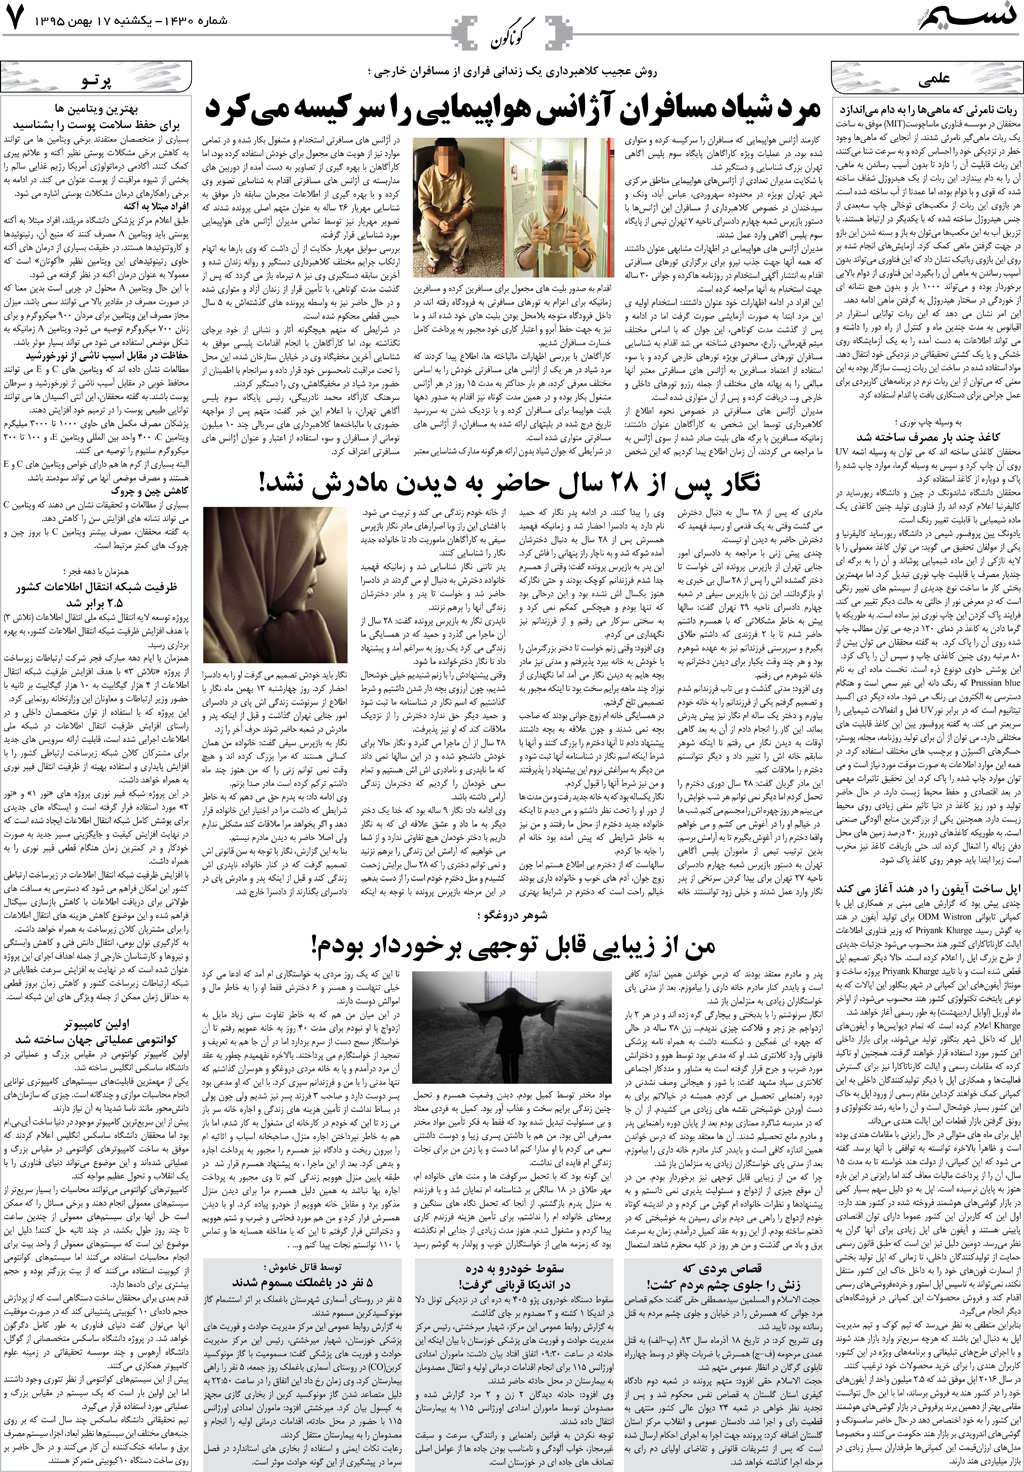 صفحه گوناگون روزنامه نسیم شماره 1430